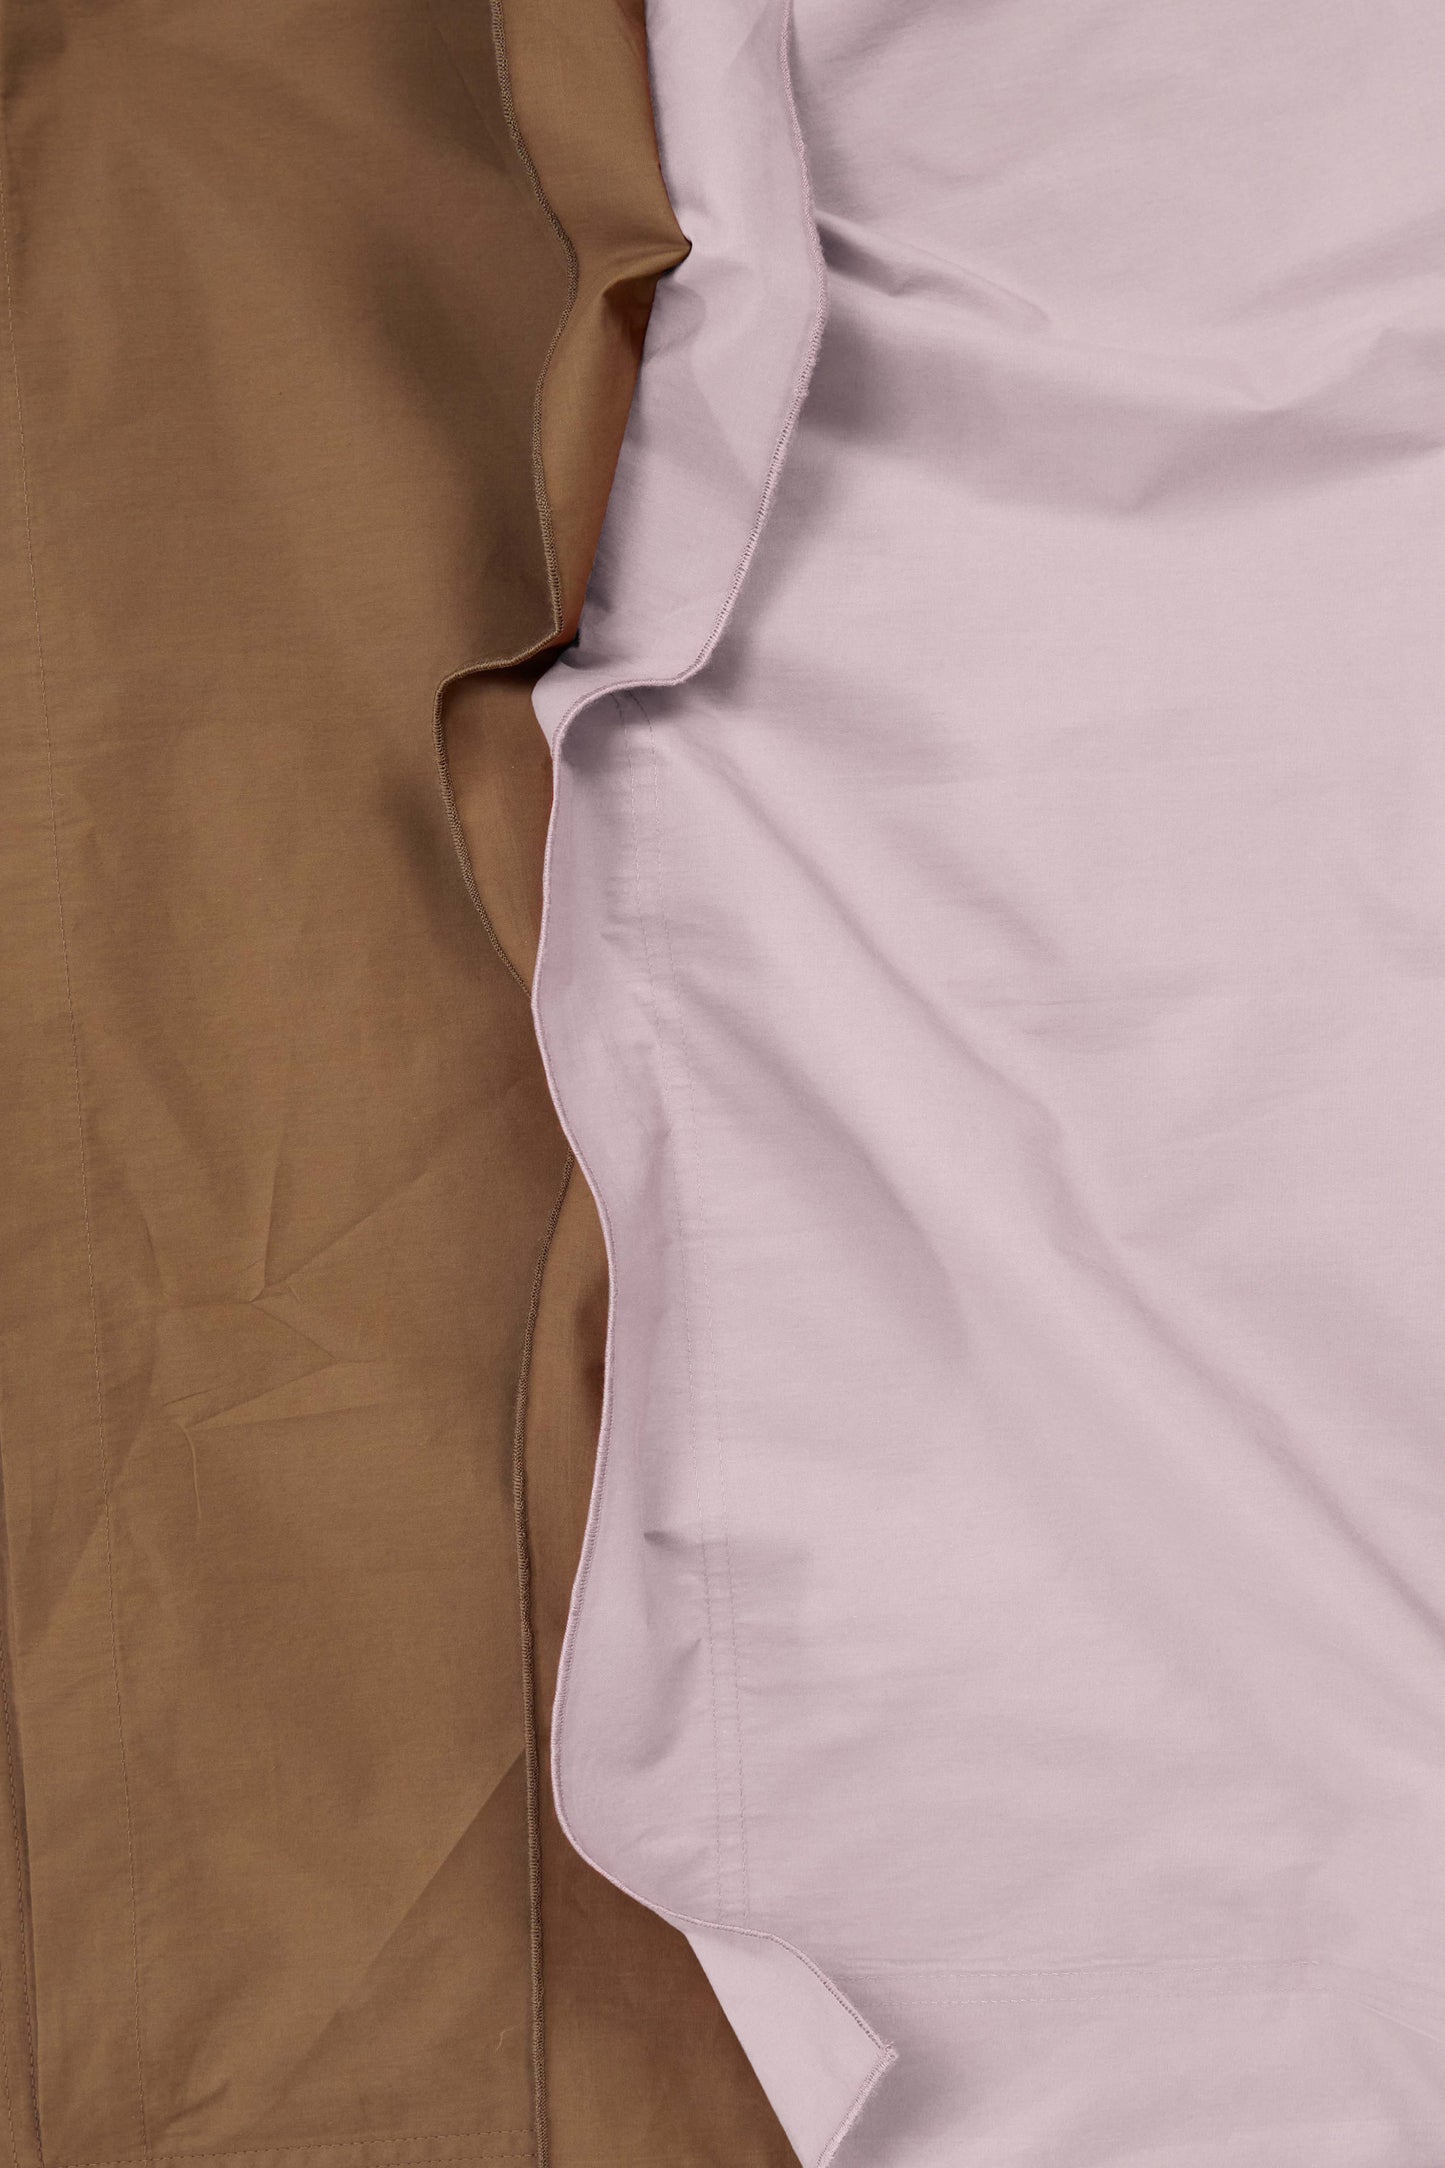 Euro Pillowcase Pair in Bi Colour - Lilac and Carob